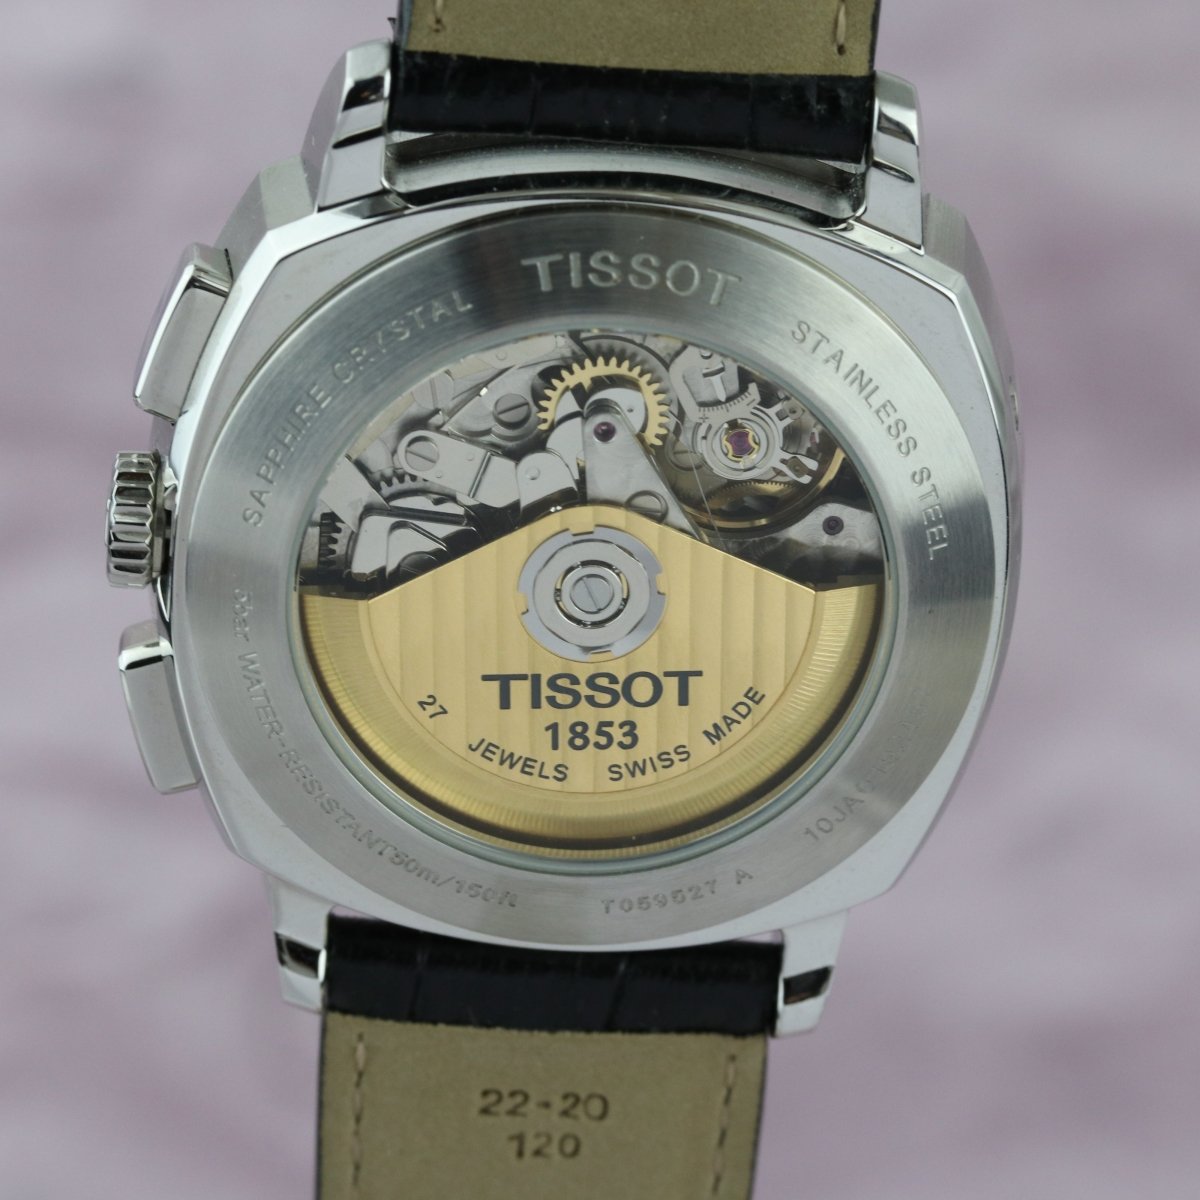 Tissot T-Classic T059.527.16.058.00 - V. Gasser 1873